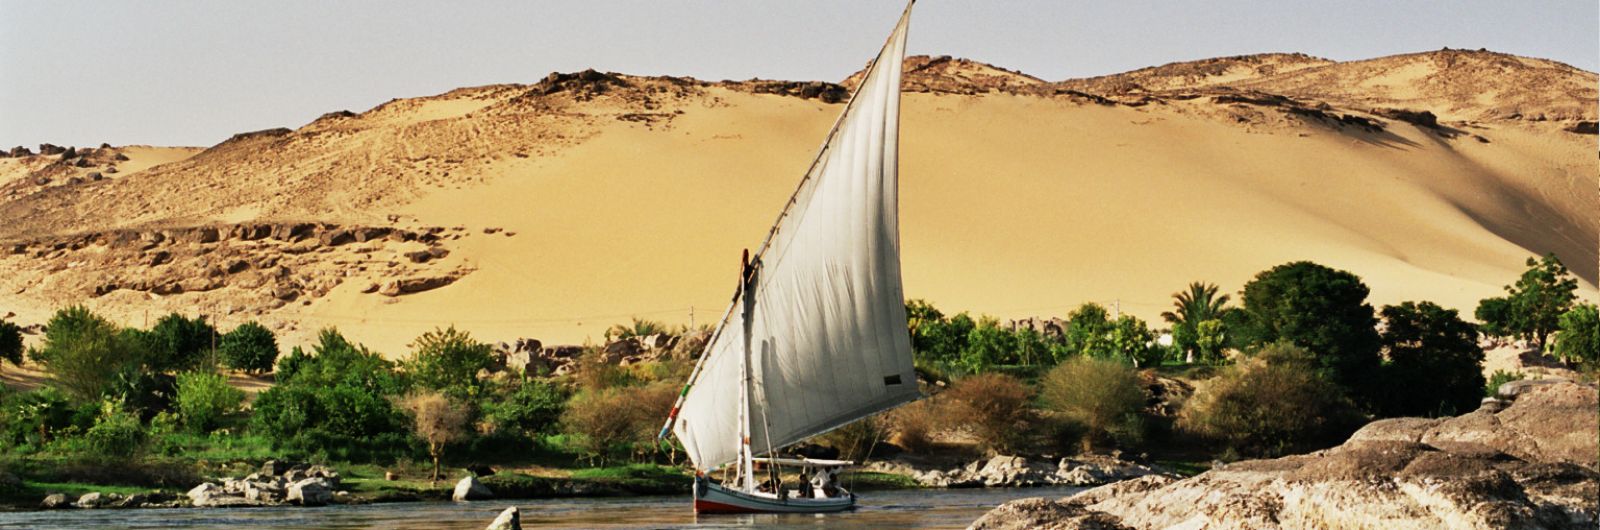 paseando en faluca en Aswan